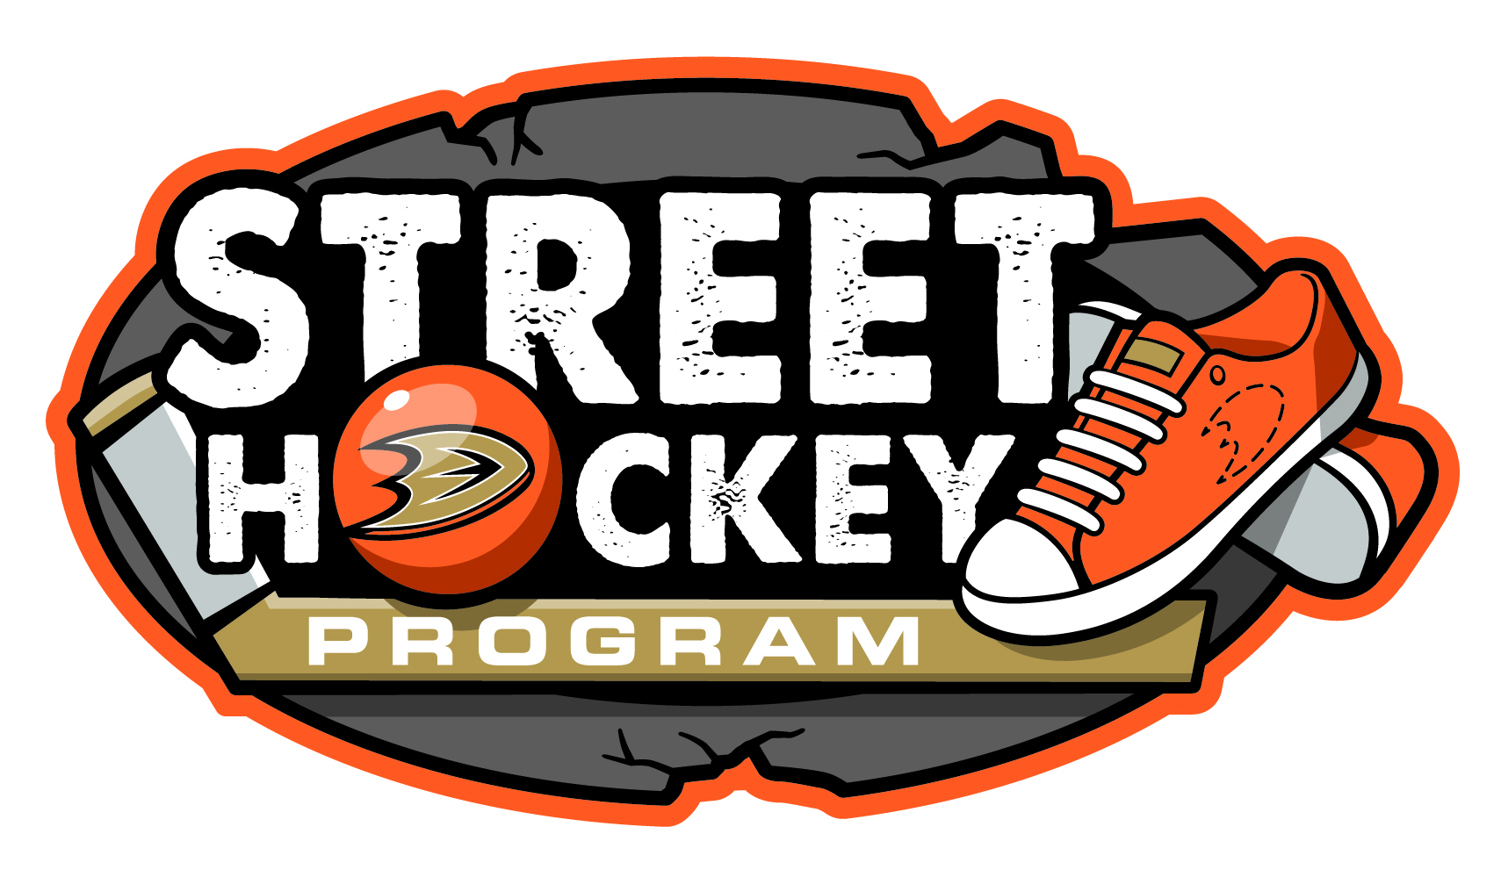 SCORE Street Hockey program logo